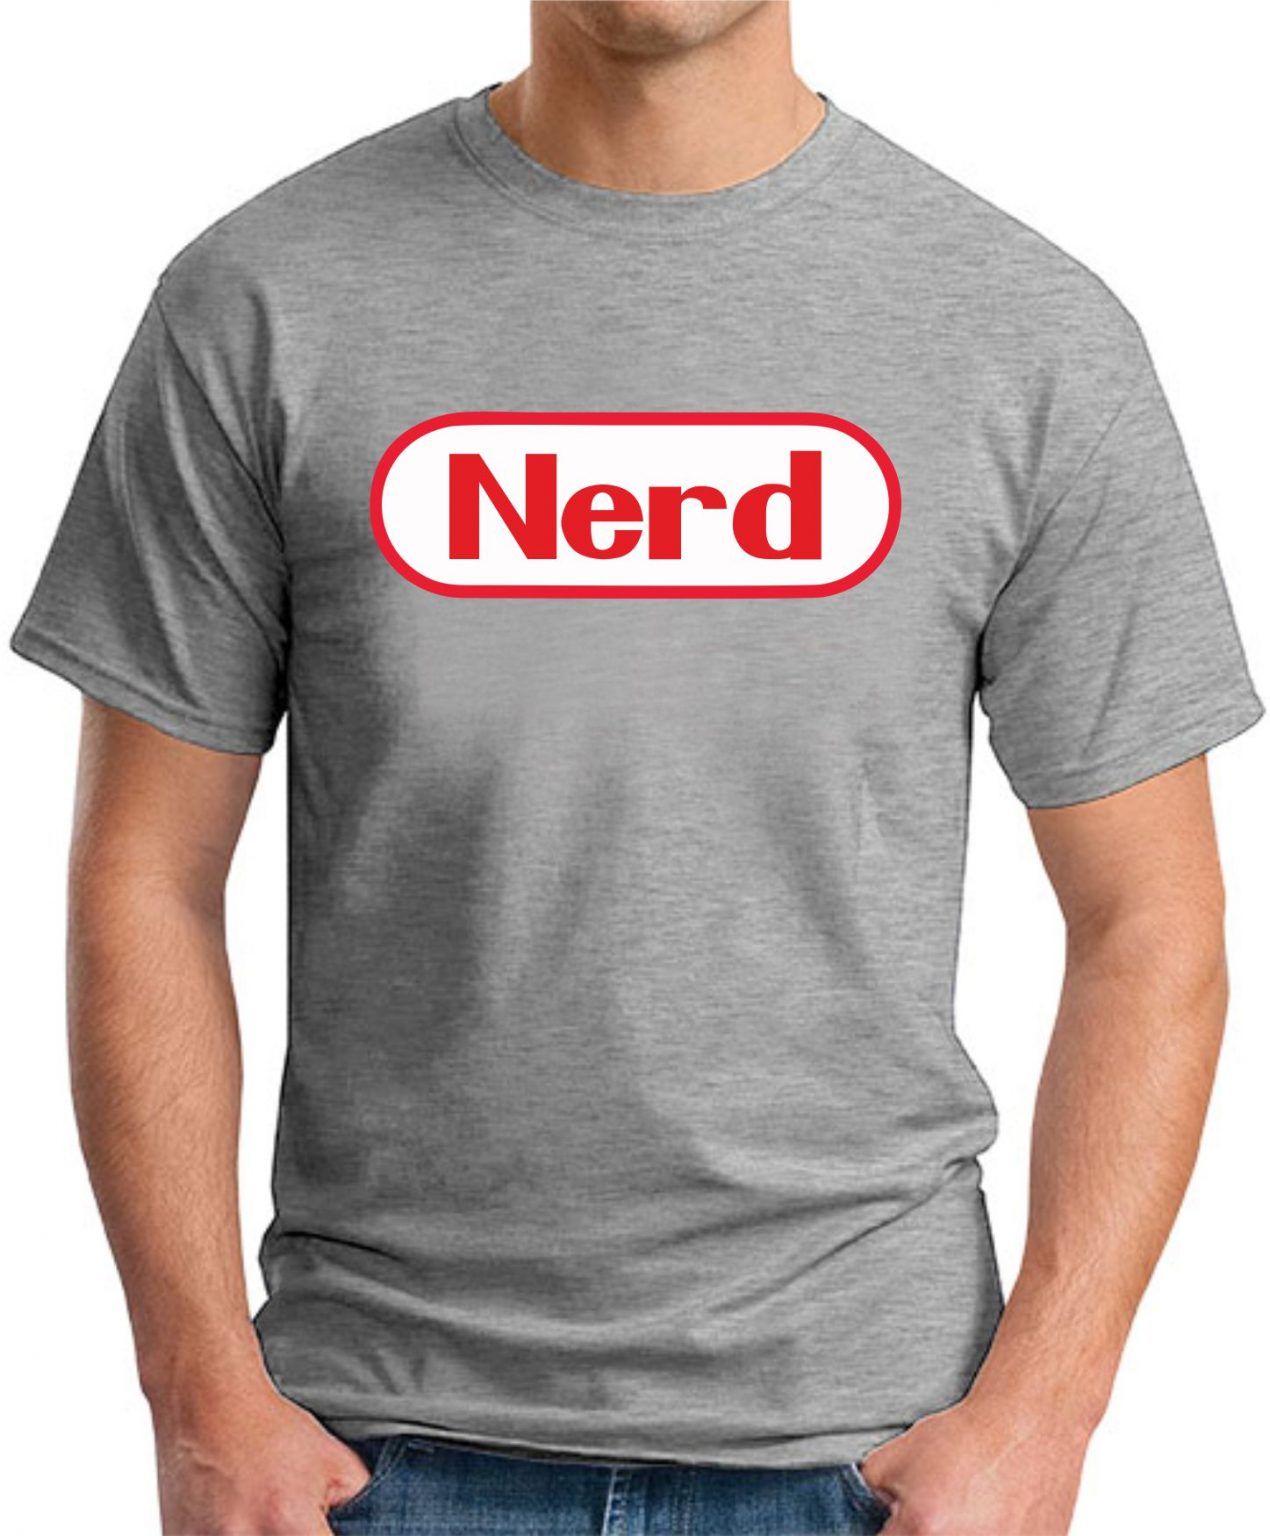 Nerd T Shirt Geekytees